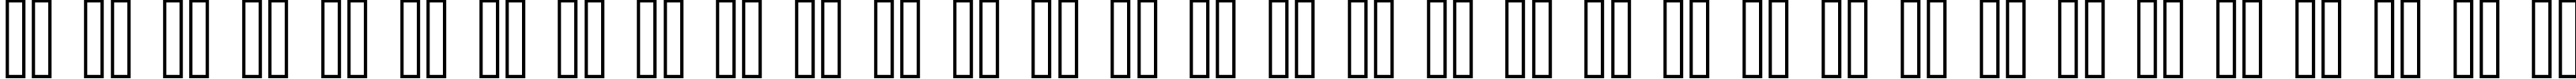 Пример написания русского алфавита шрифтом standard 09_55